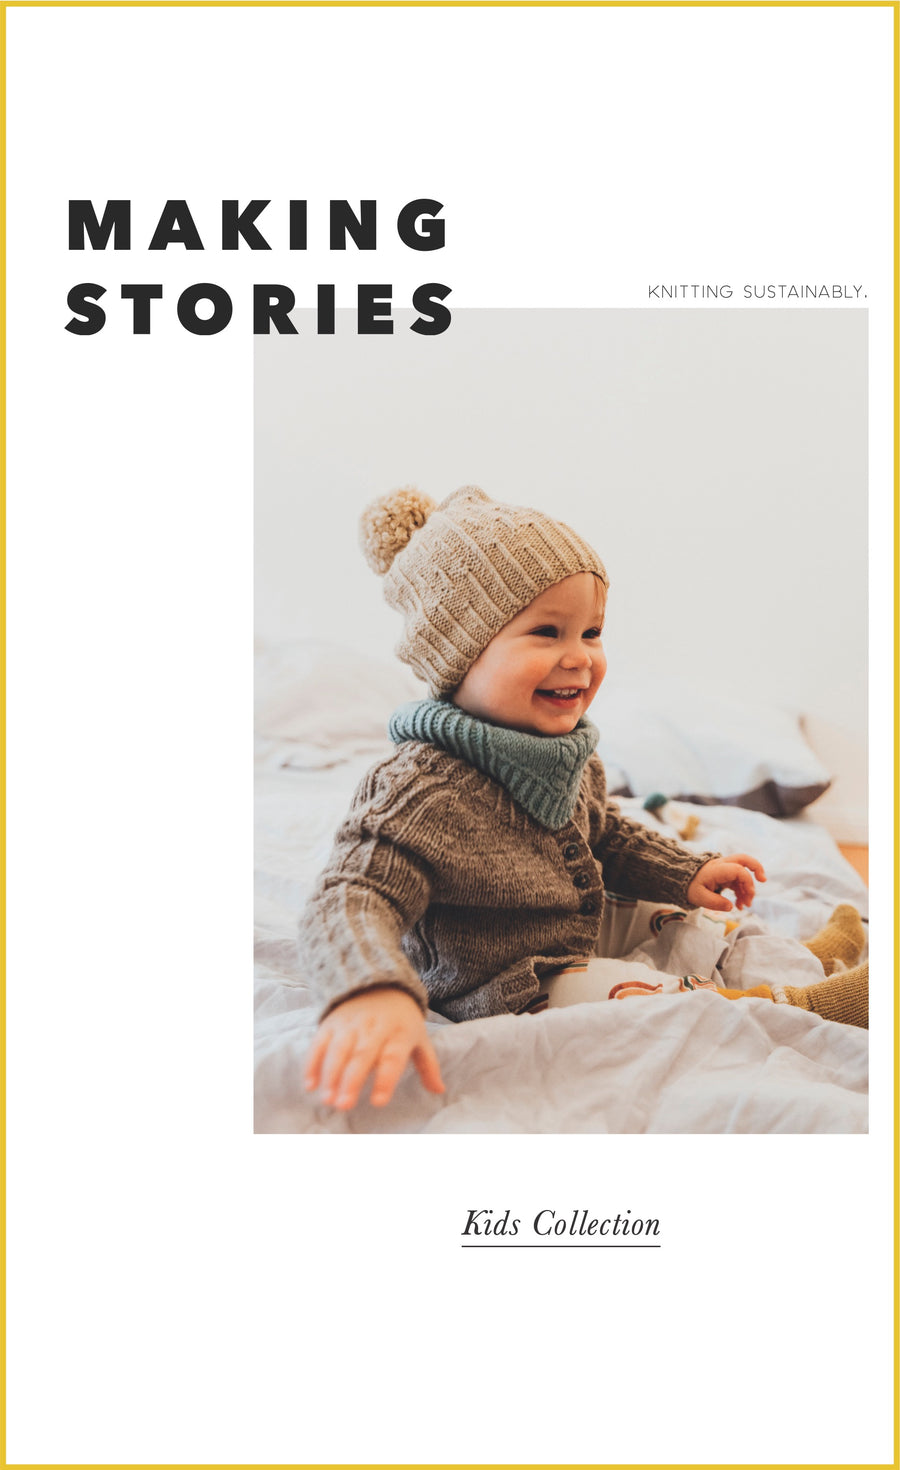 Kit Joy cardigan - Kids Collection / Making Stories